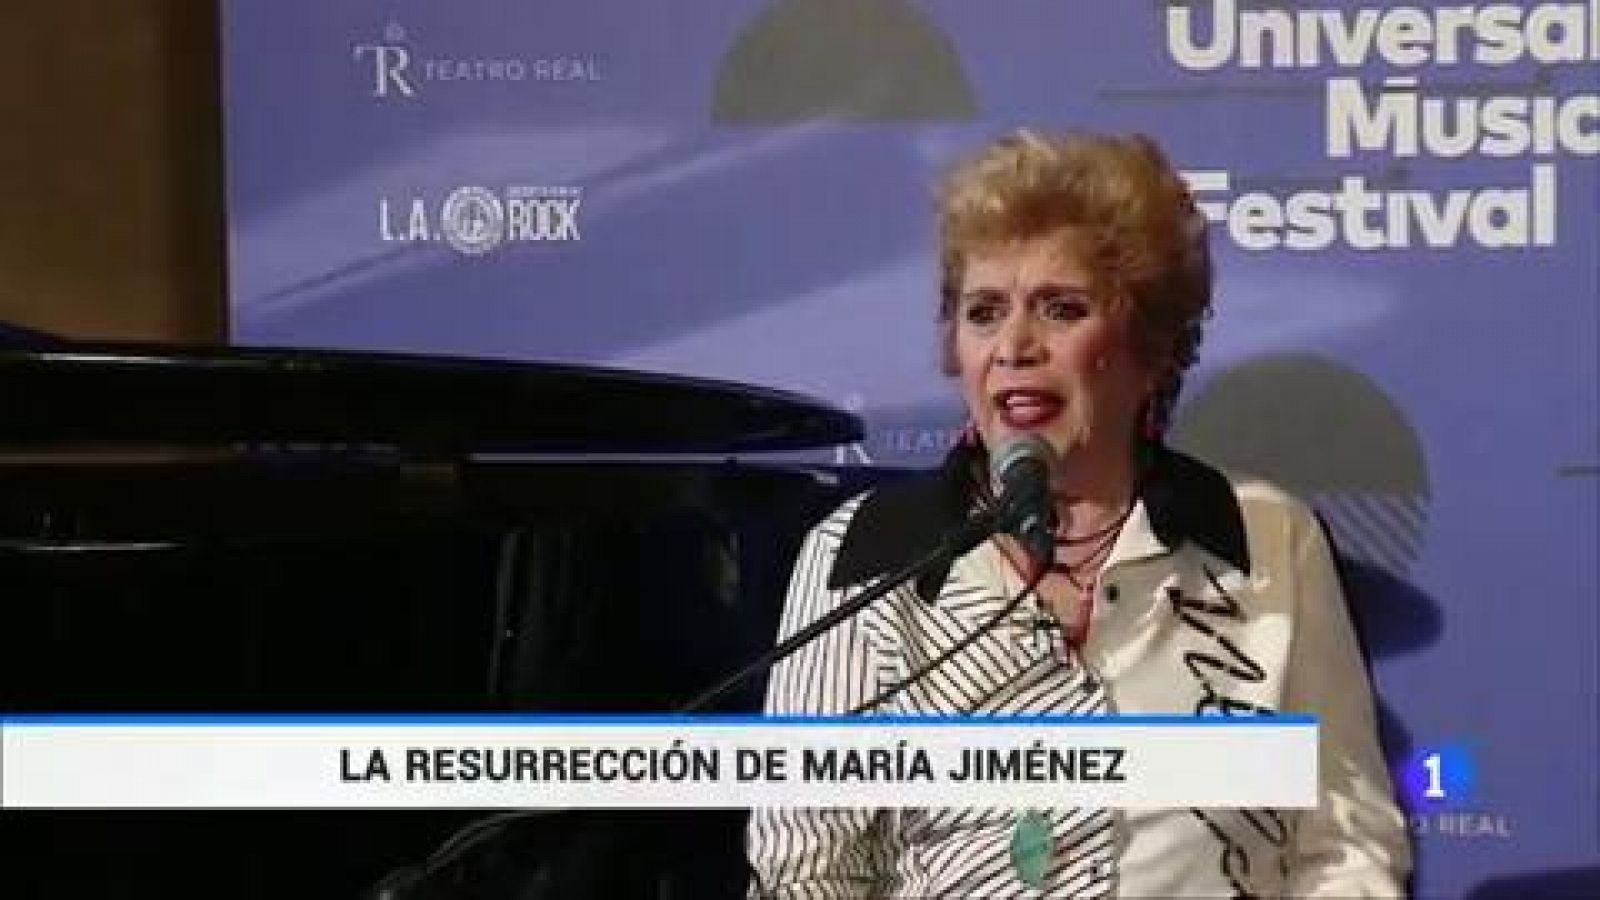 Telediario 1: Después de superar graves problemas de salud, María Jiménez retoma su carrera artística a los 70 años | RTVE Play